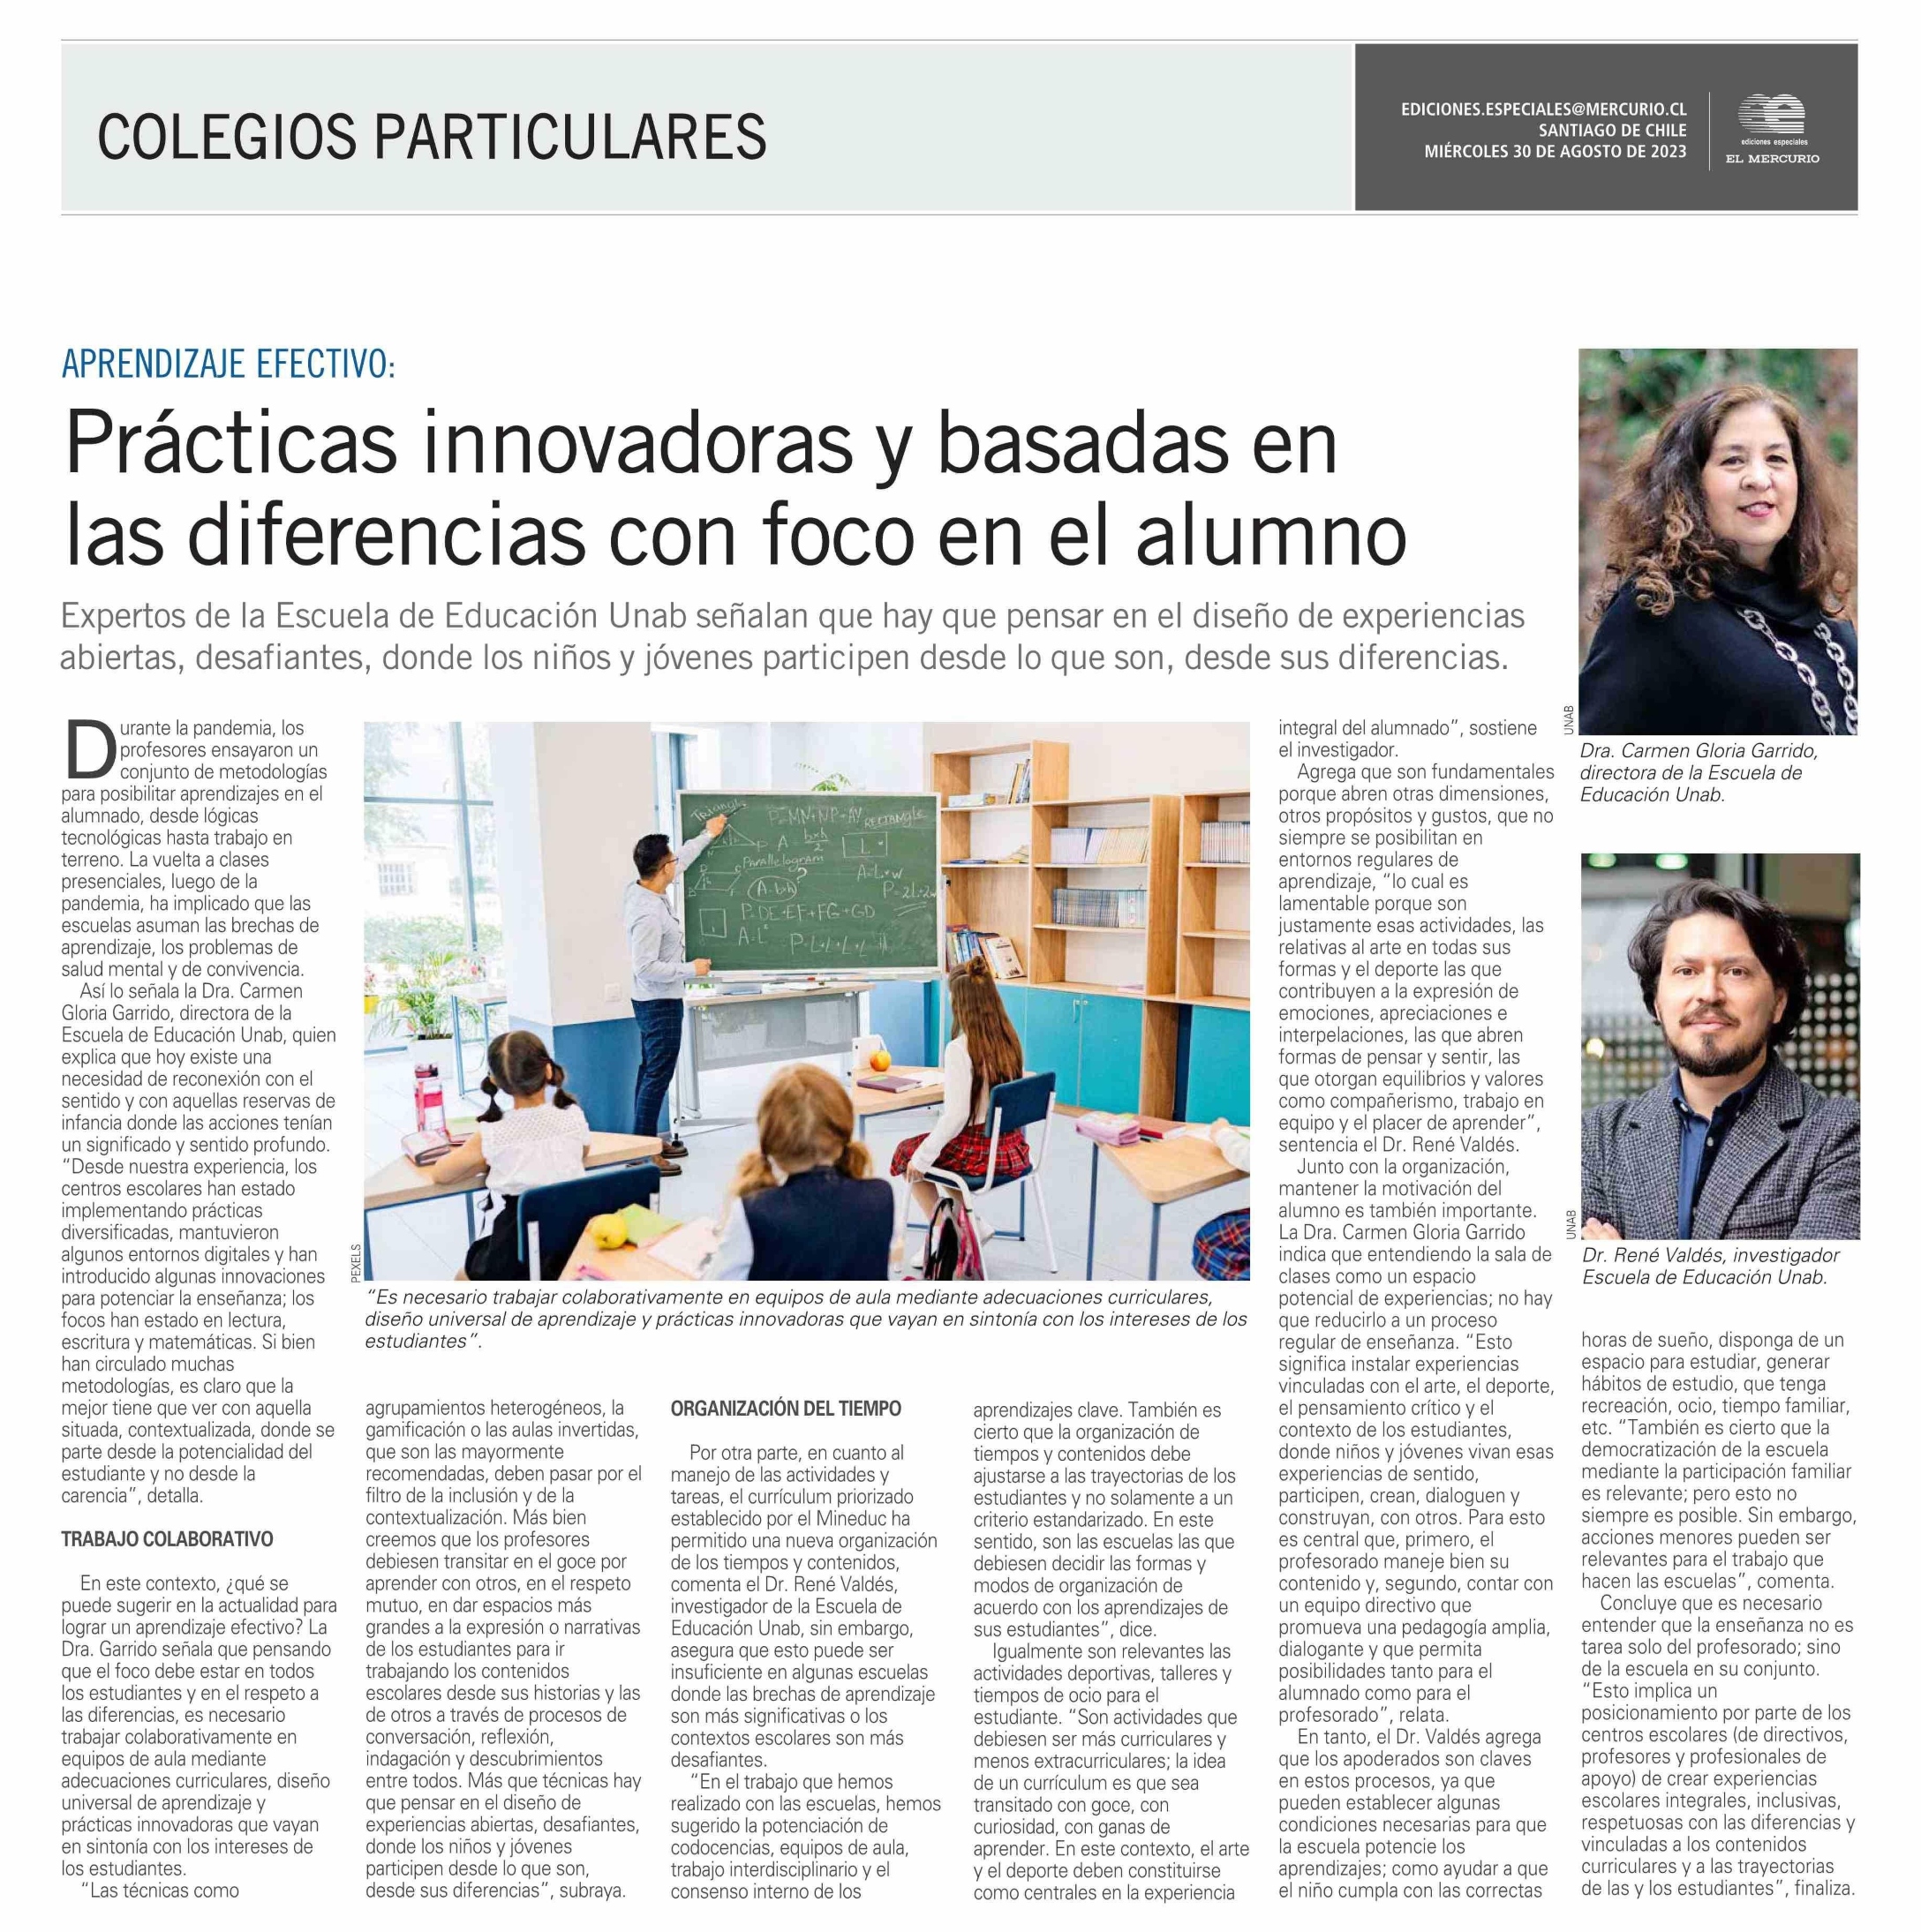 Expertos de la Escuela de Educación UNAB, Carmen Gloria Garrido y René Valdés, consideran que las prácticas innovadoras permiten que los estudiantes se involucren activamente en su proceso de aprendizaje.